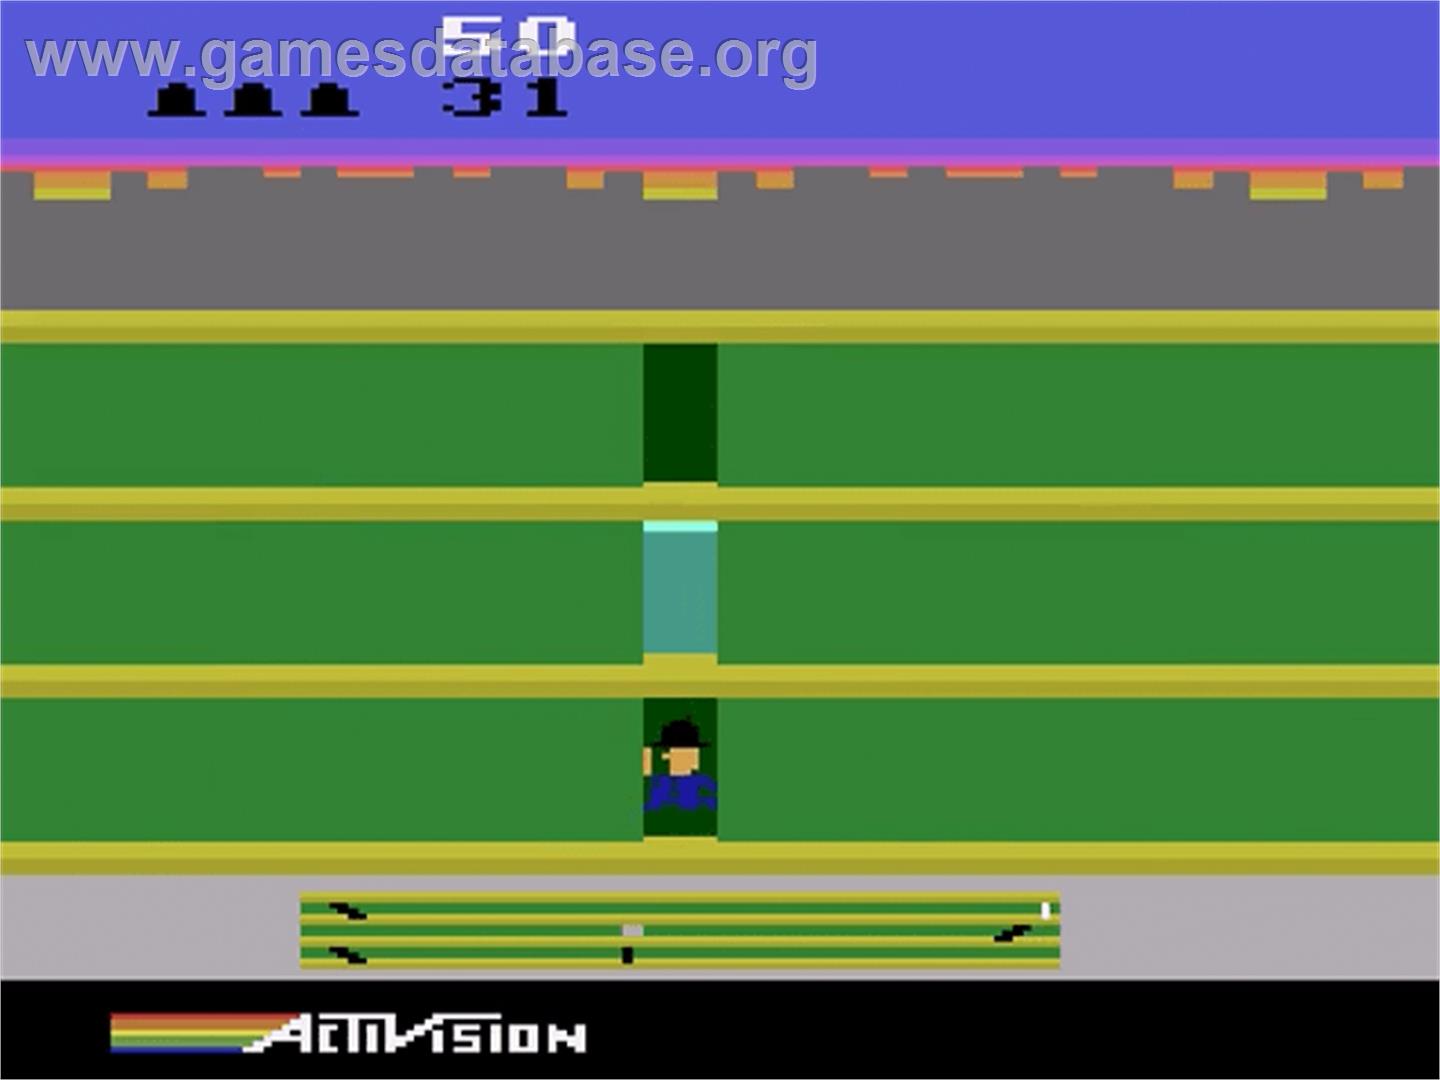 Keystone Kapers - Atari 2600 - Artwork - In Game